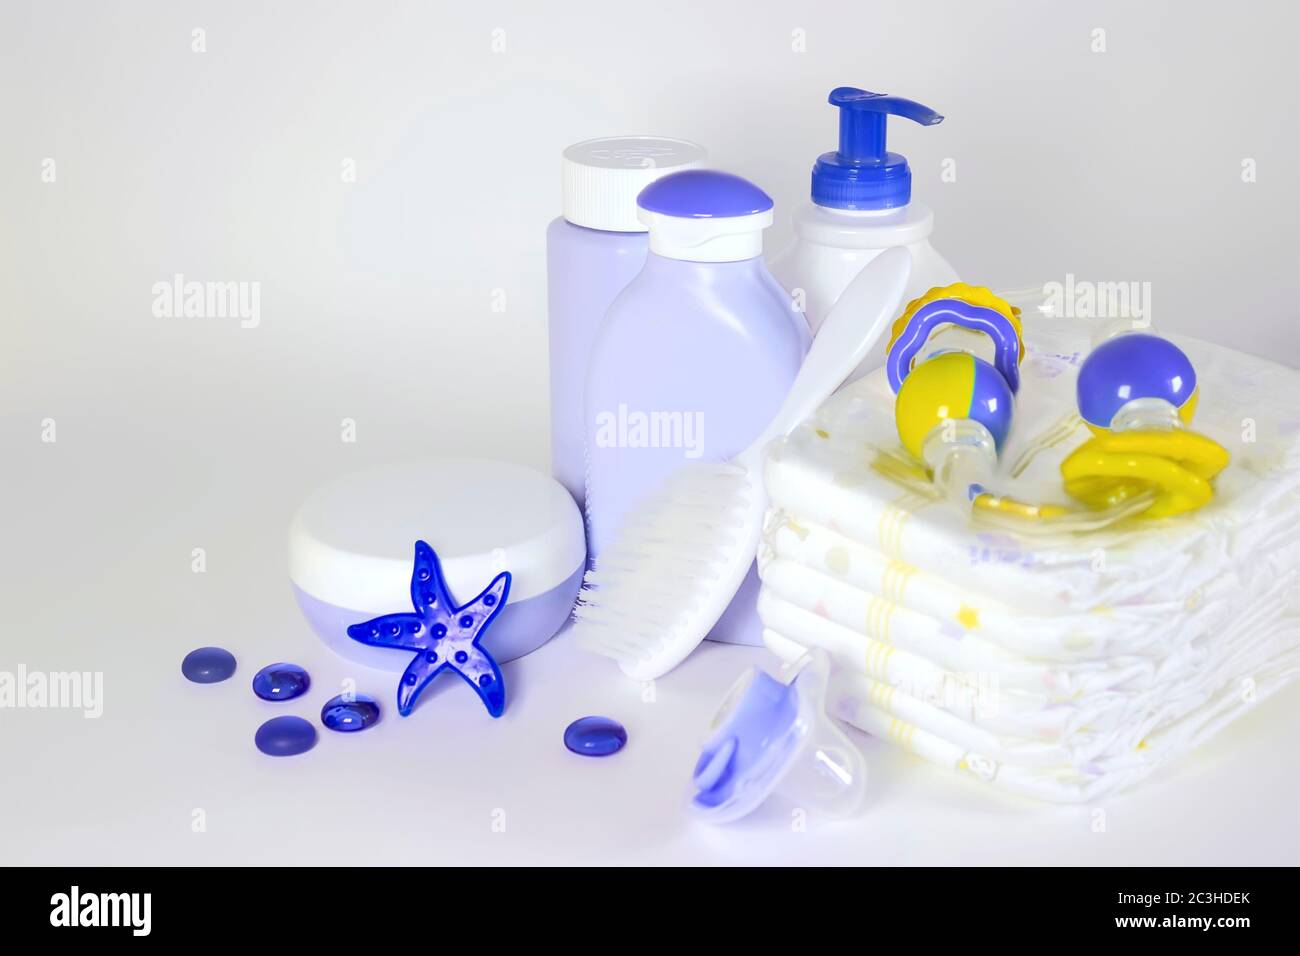 Igiene dei bambini: articoli da bagno, flacone di shampoo, giocattolo in gomma, spugna, pettine, termometro, forbici di sicurezza vista dall'alto, su sfondo blu Foto Stock